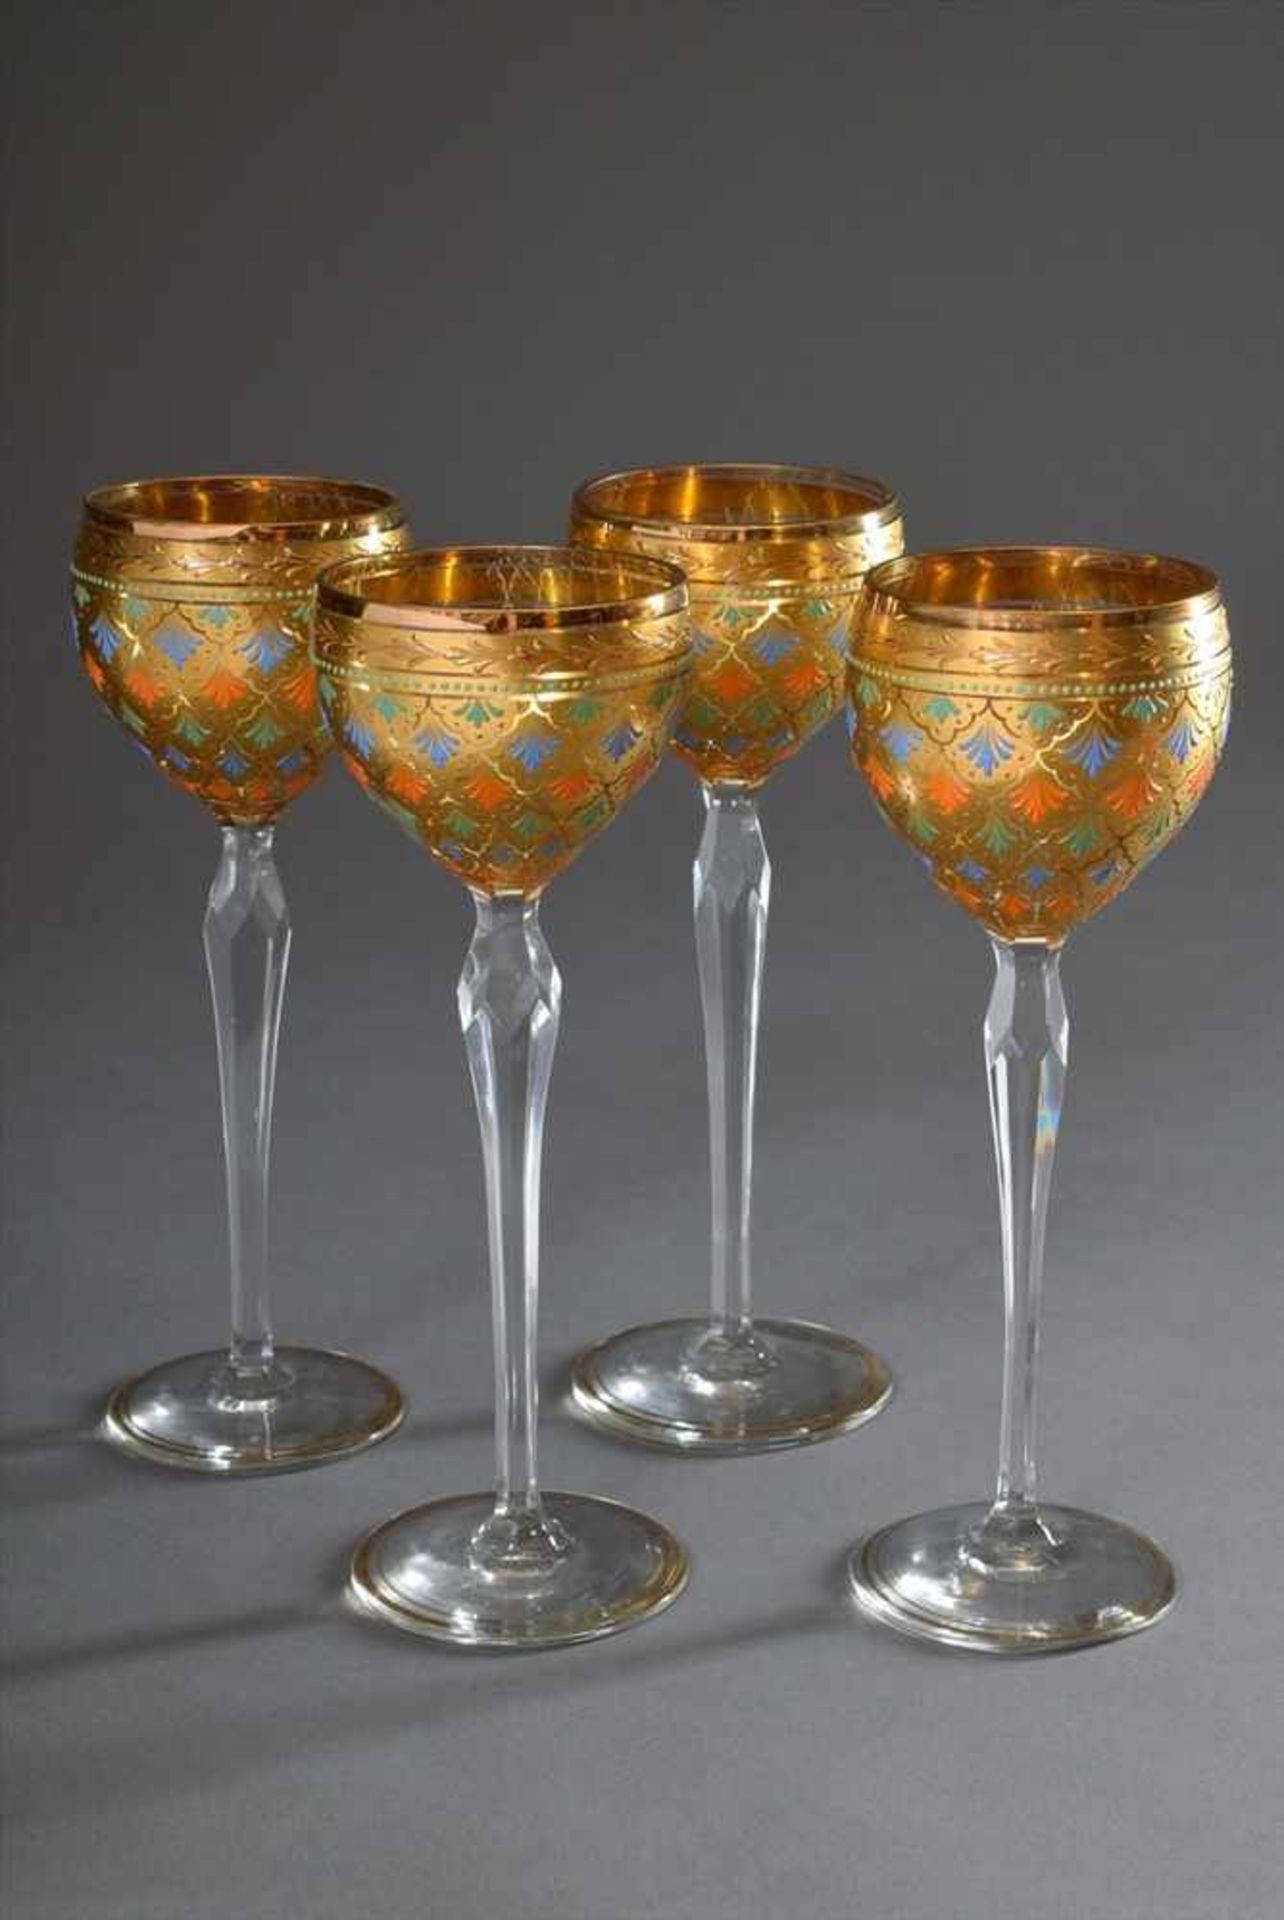 4 Hochstielige Weingläser mit orientalisch bemalter Kuppa in Gold, Orange, Blau und Grün, um 1920/